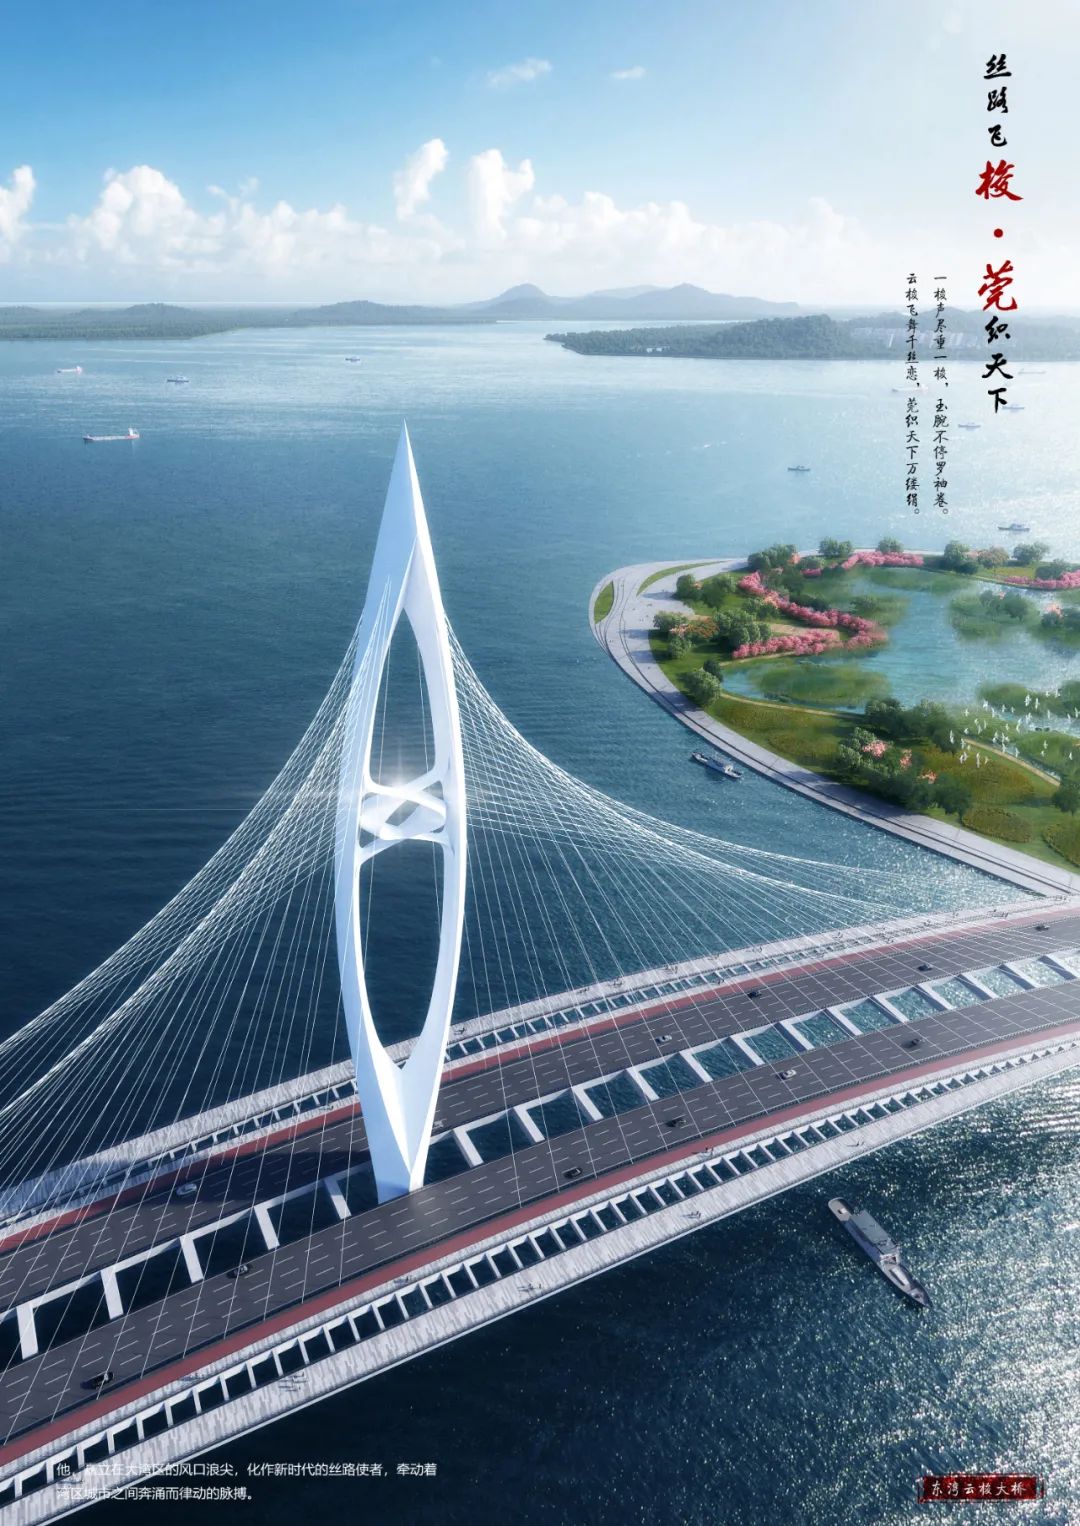 何镜堂院士领衔再造滨海湾国际一流景观大桥